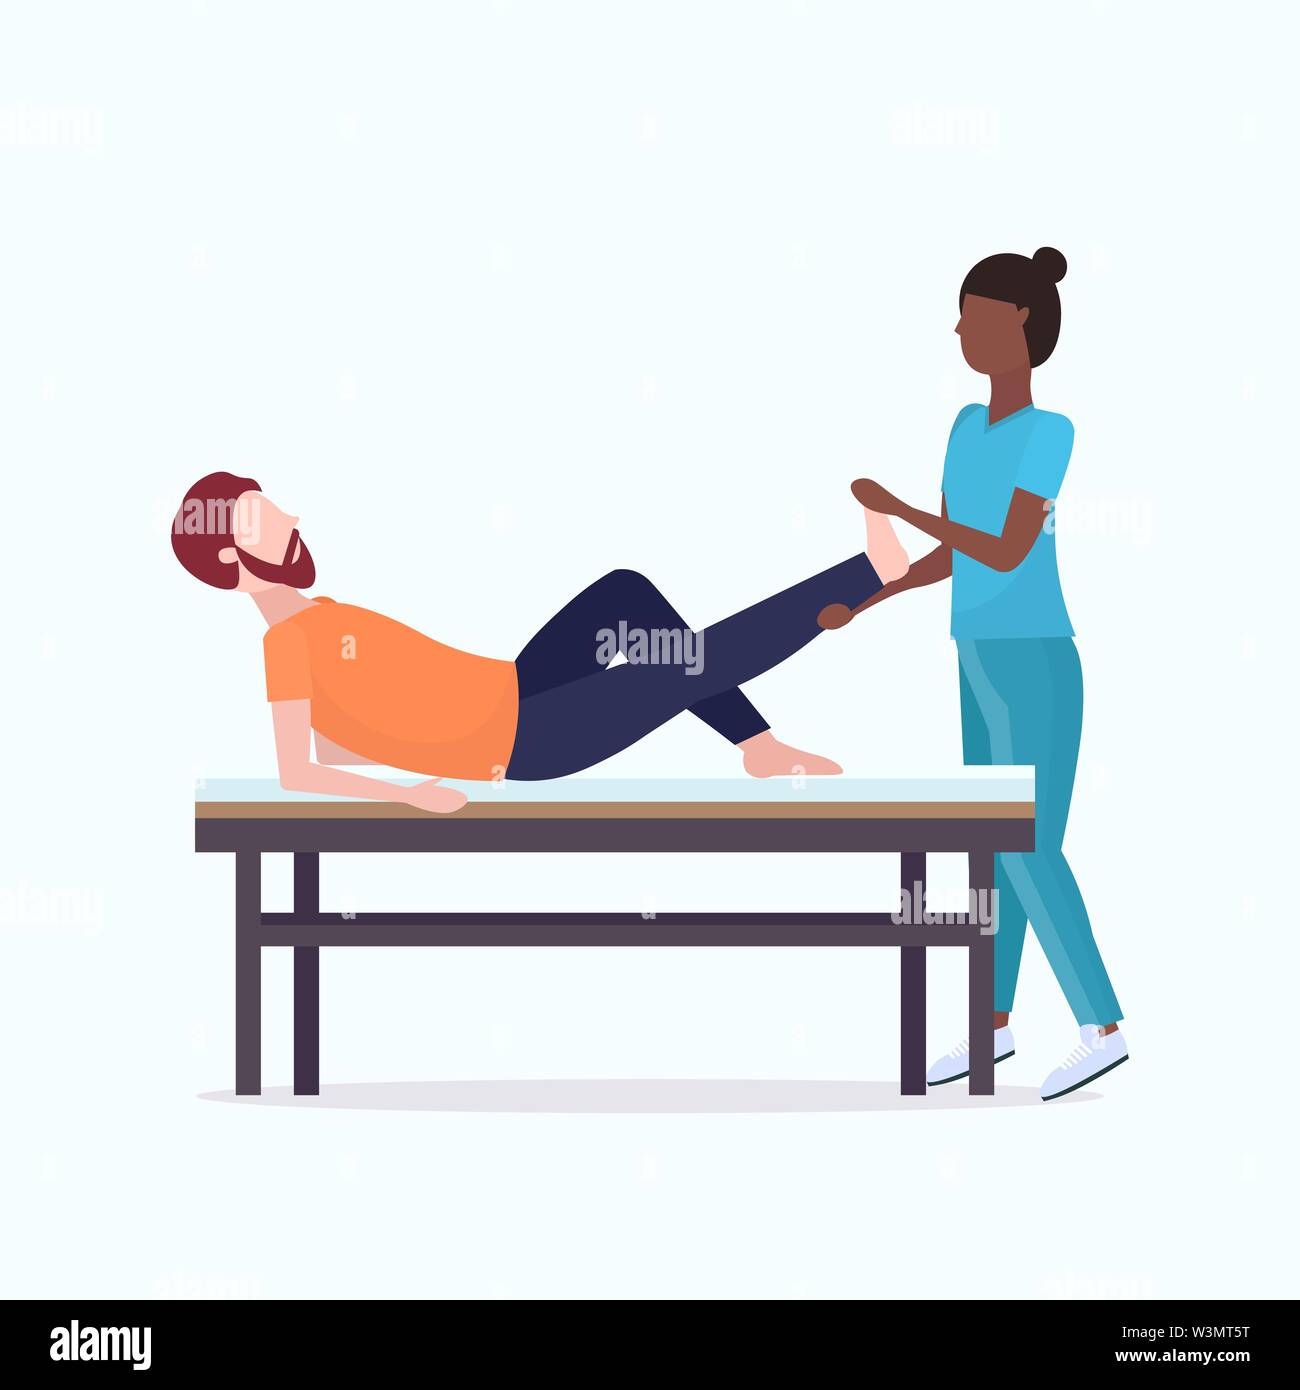 Guy liegen auf Massage bed afrikanische amerikanische Masseurin Therapeut tun Heilung Massage patient verletzte Bein Handbuch sport Physikalische Therapie Stock Vektor